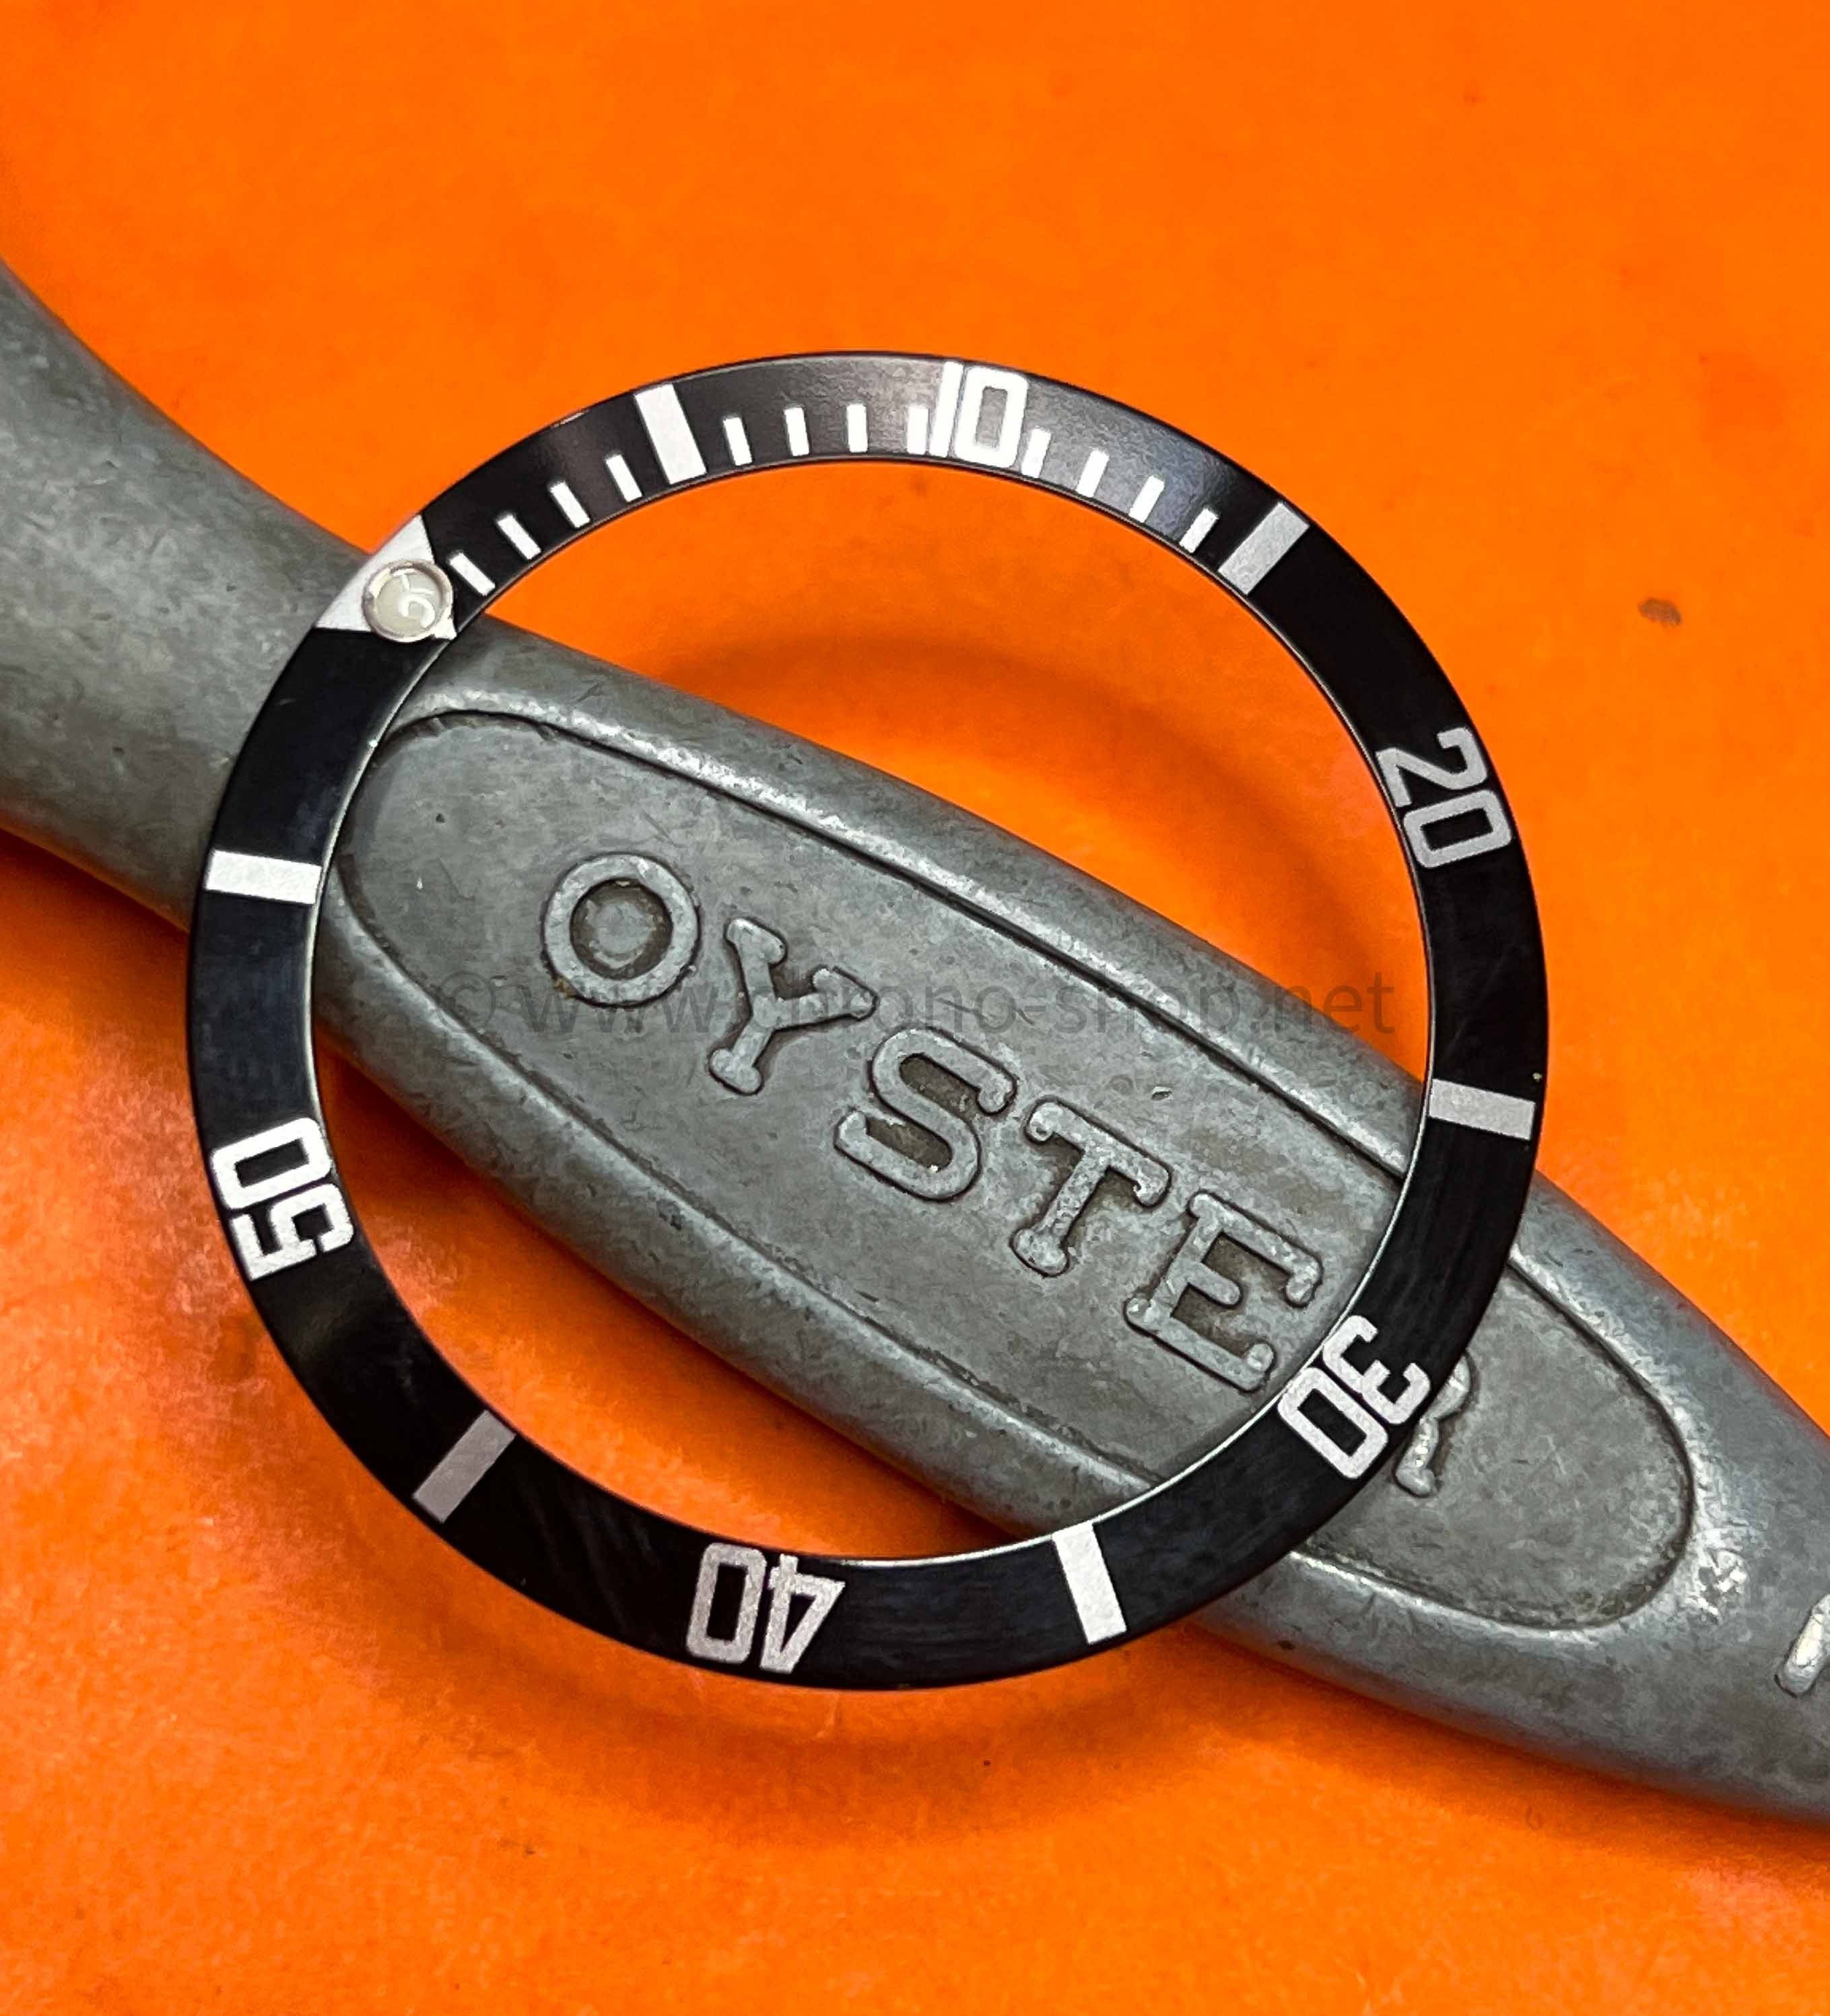 Rolex Original Watch part Submariner watches 14060,14060M Jet Black bezel Luminova insert Inlay spare for sale